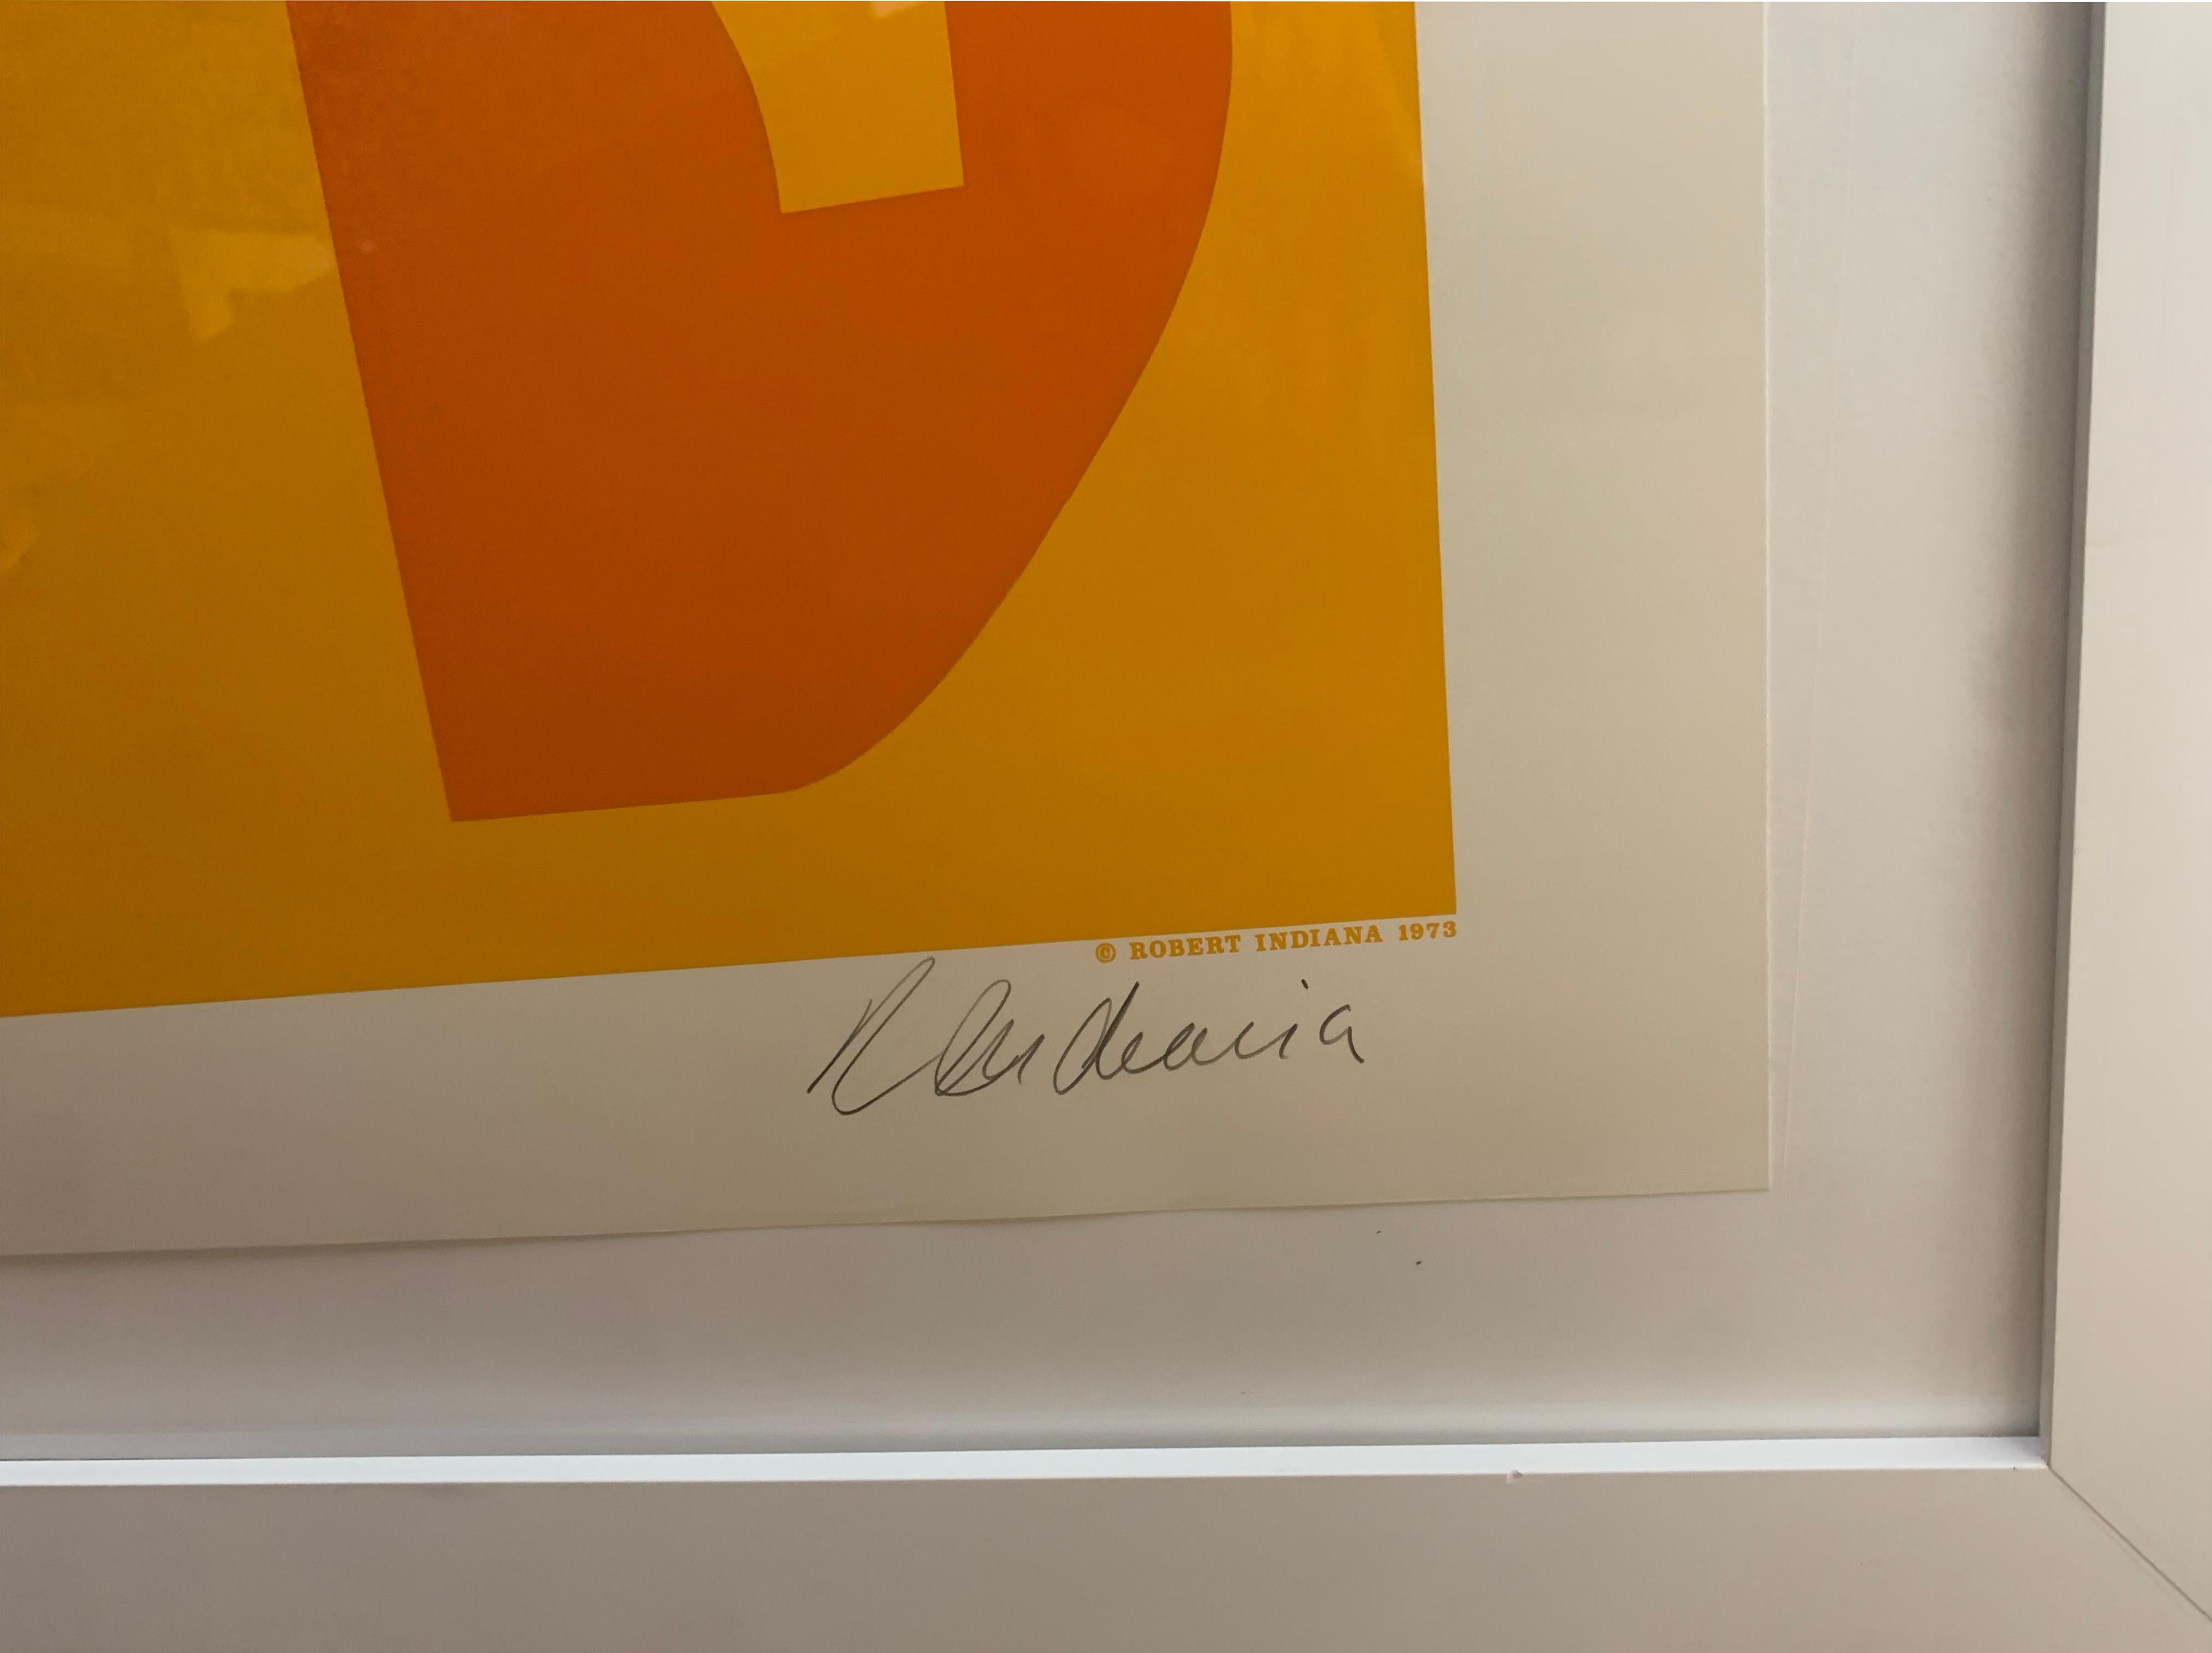 Künstler: Robert Indiana
Titel: Goldene Liebe
Medium: Siebdruck in Farben auf Velinpapier
Größe: 35,13 x 35,13